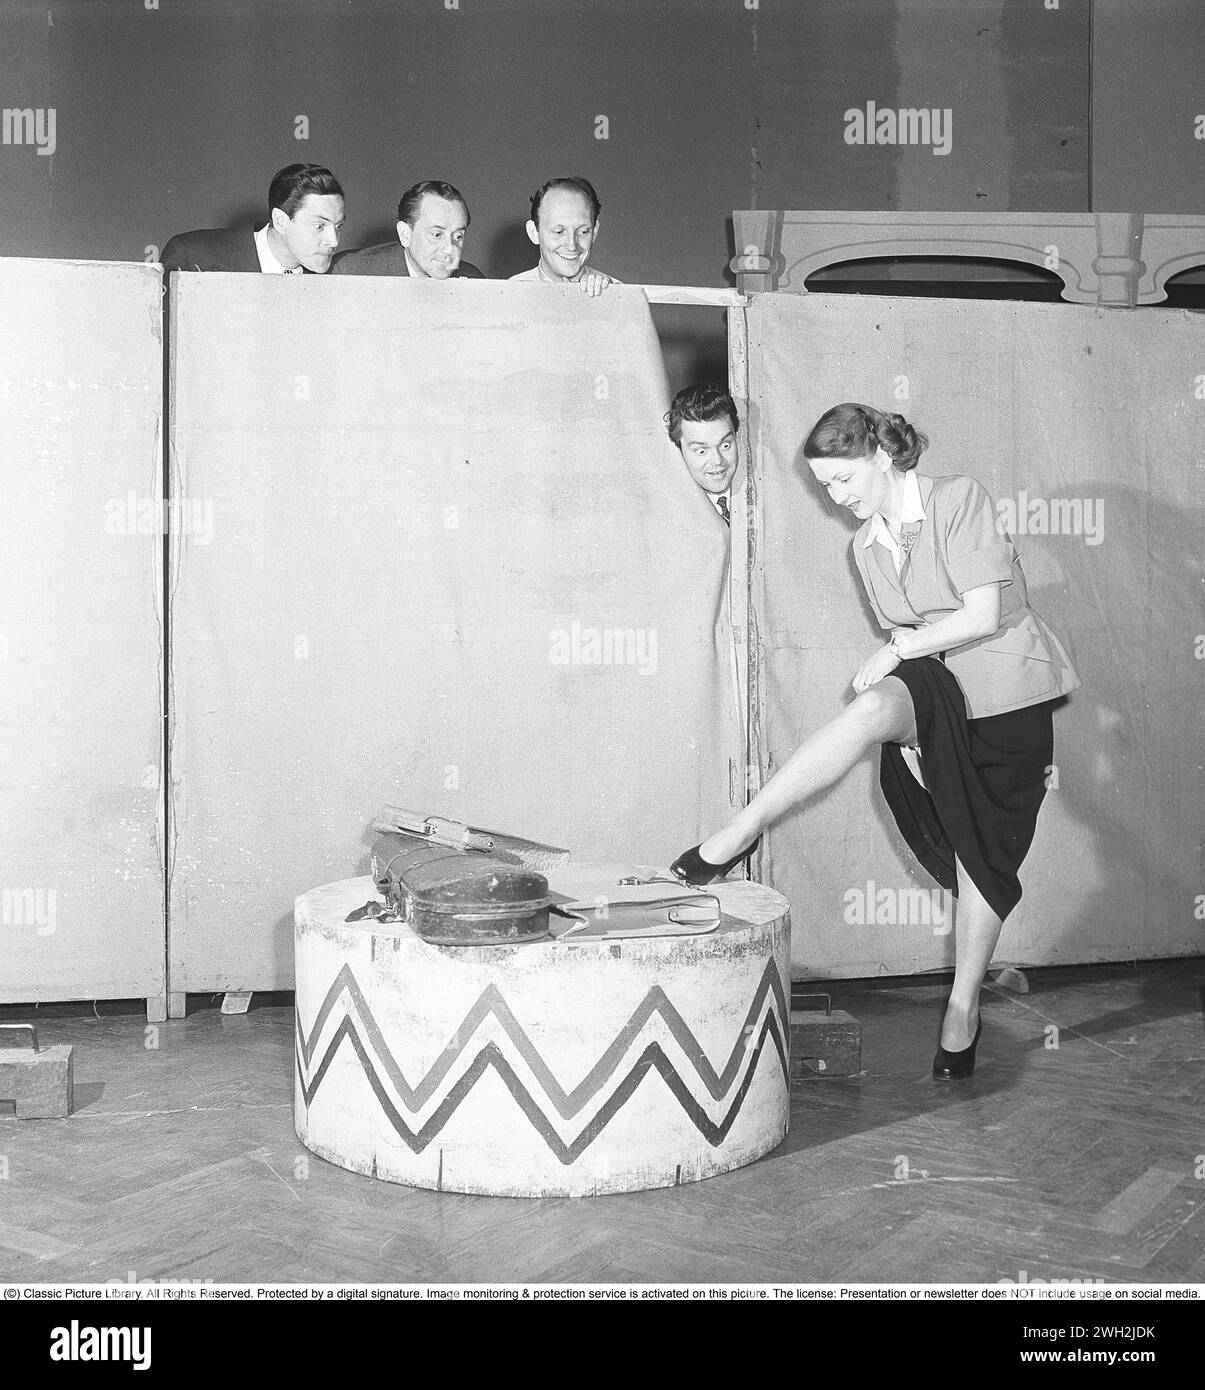 Hinter den Kulissen des Theaters in den 1950er Jahren Eine junge Frau steht und stellt die Strumpfhose an einem Bein ein, zeigt so mehr als sonst ihre schönen Beine. Es ist ungewiss, ob sie weiß, dass vier Männer stehen und auf sie schauen, während sie dies tut. 1950. Kristoffersson Ref. AY56-11 Stockfoto